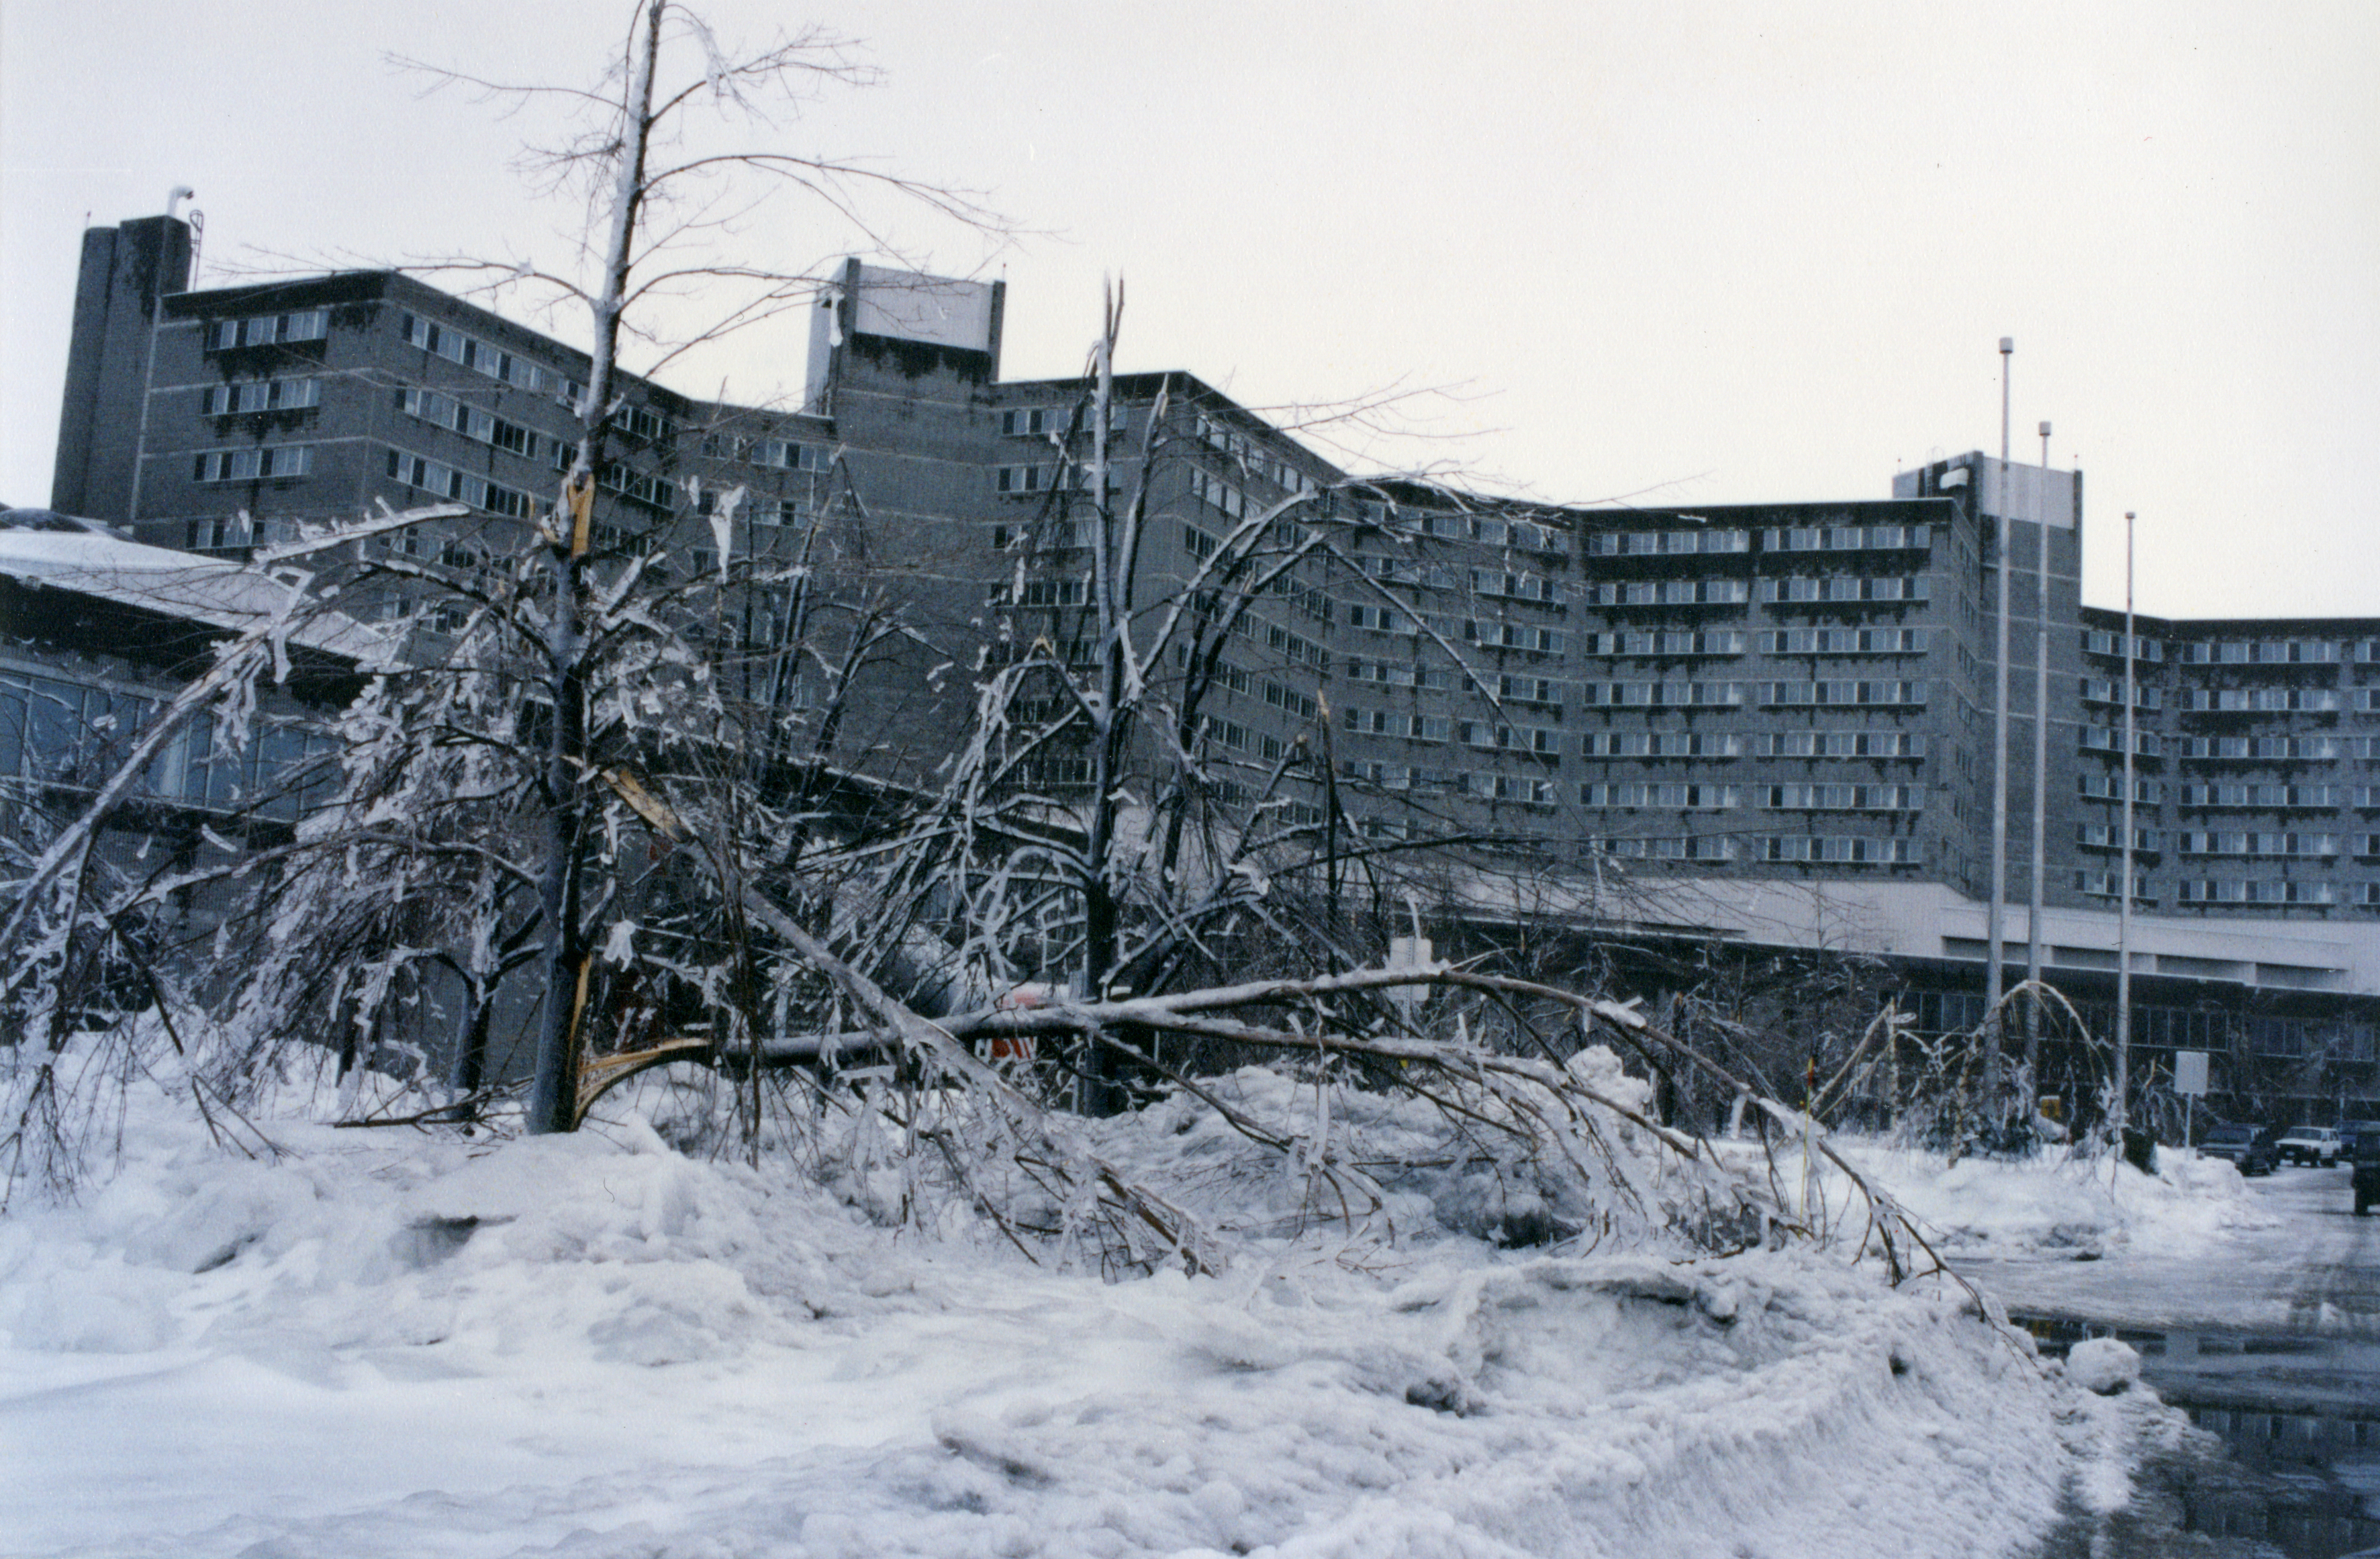 Les arbres se brisent sous le poids de la glace. On voit en arrière plan la base militaire de Saint-Jean.